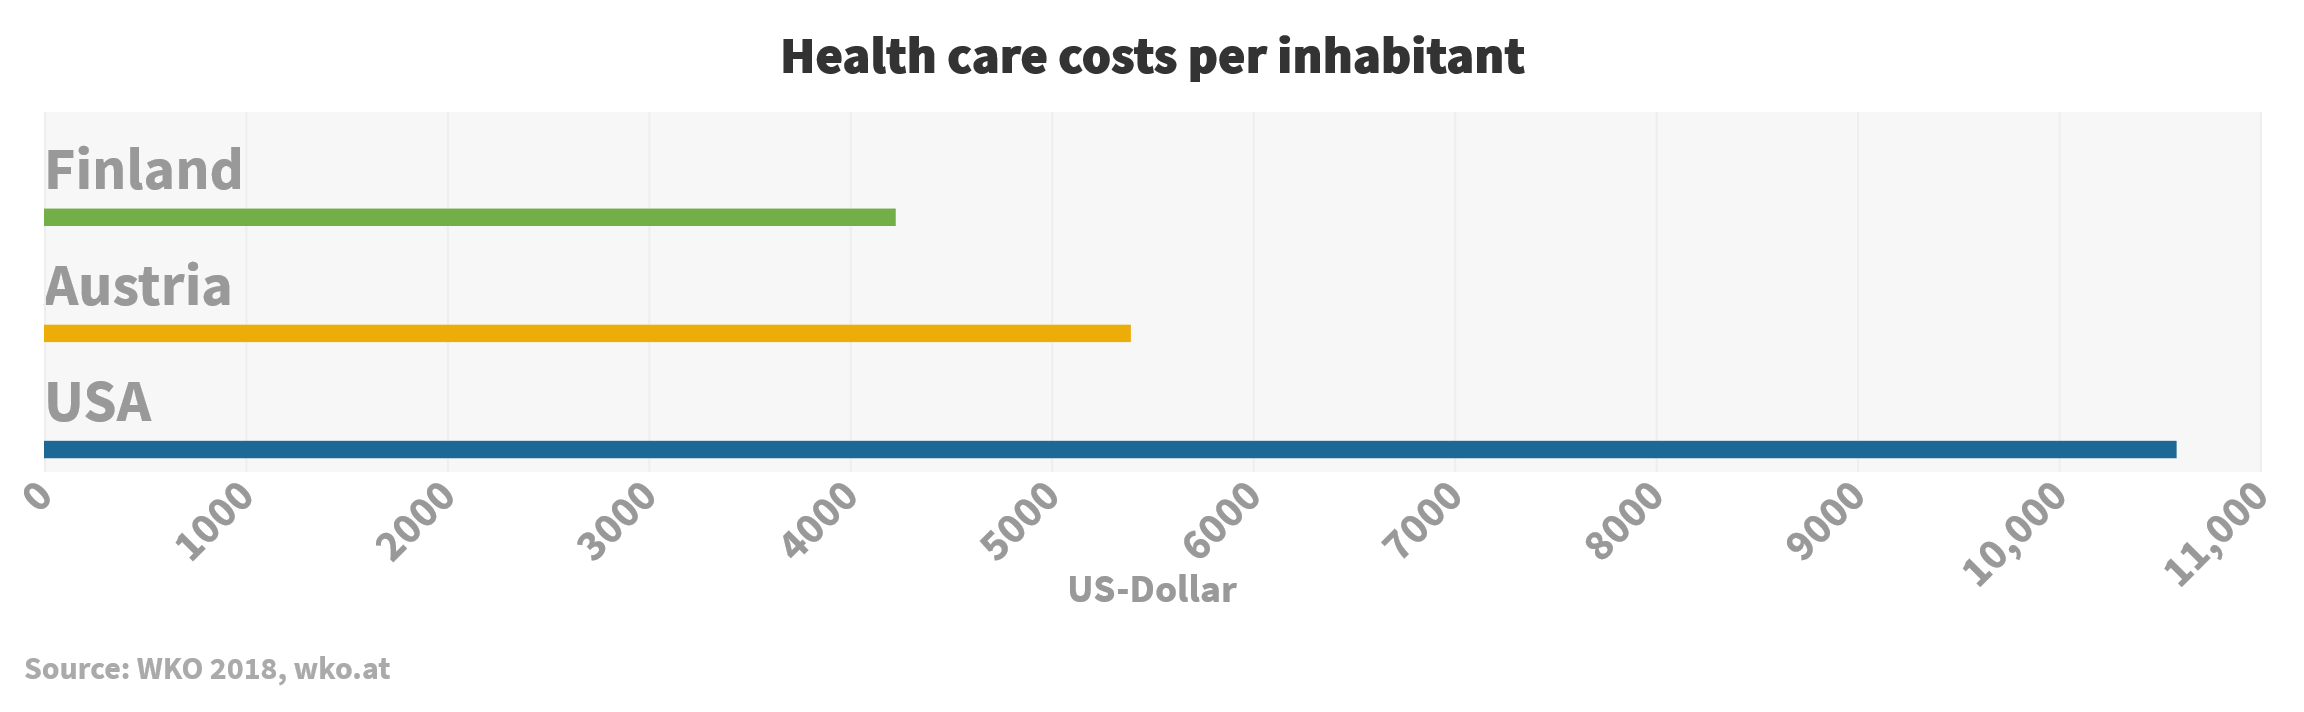 Health care costs per inhabitant